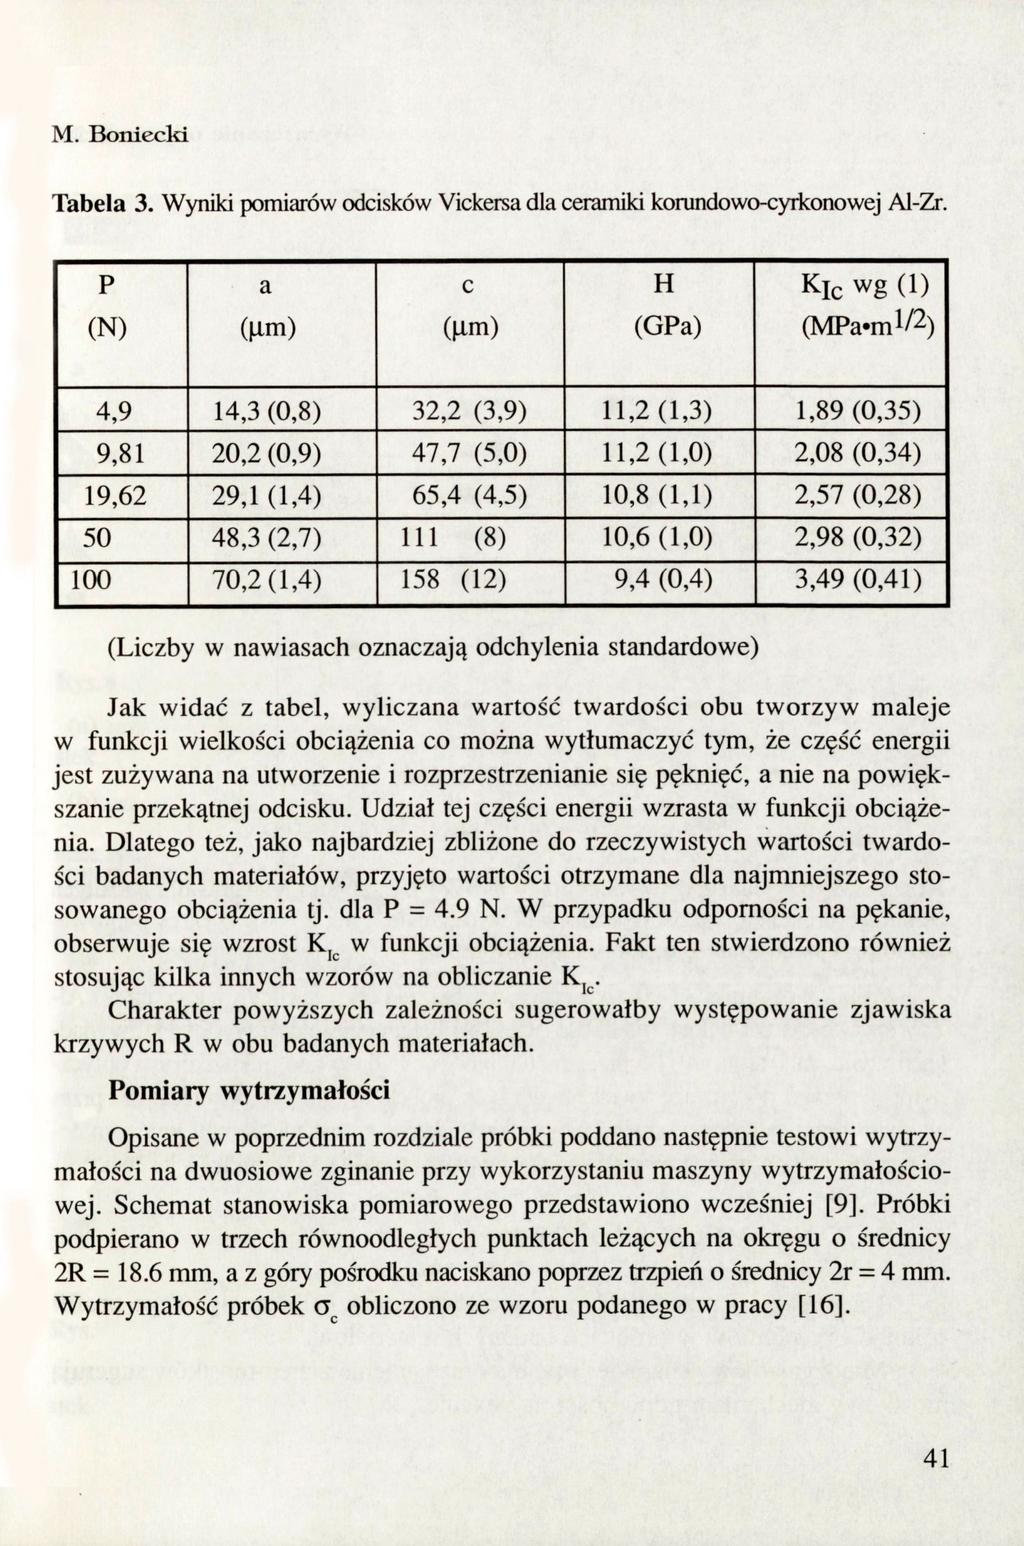 M. Botiiecki Tabela 3. Wyniki pomiarów odcisków Yickersa dla ceramiki korundowo-cyriconowej Al-Zr.